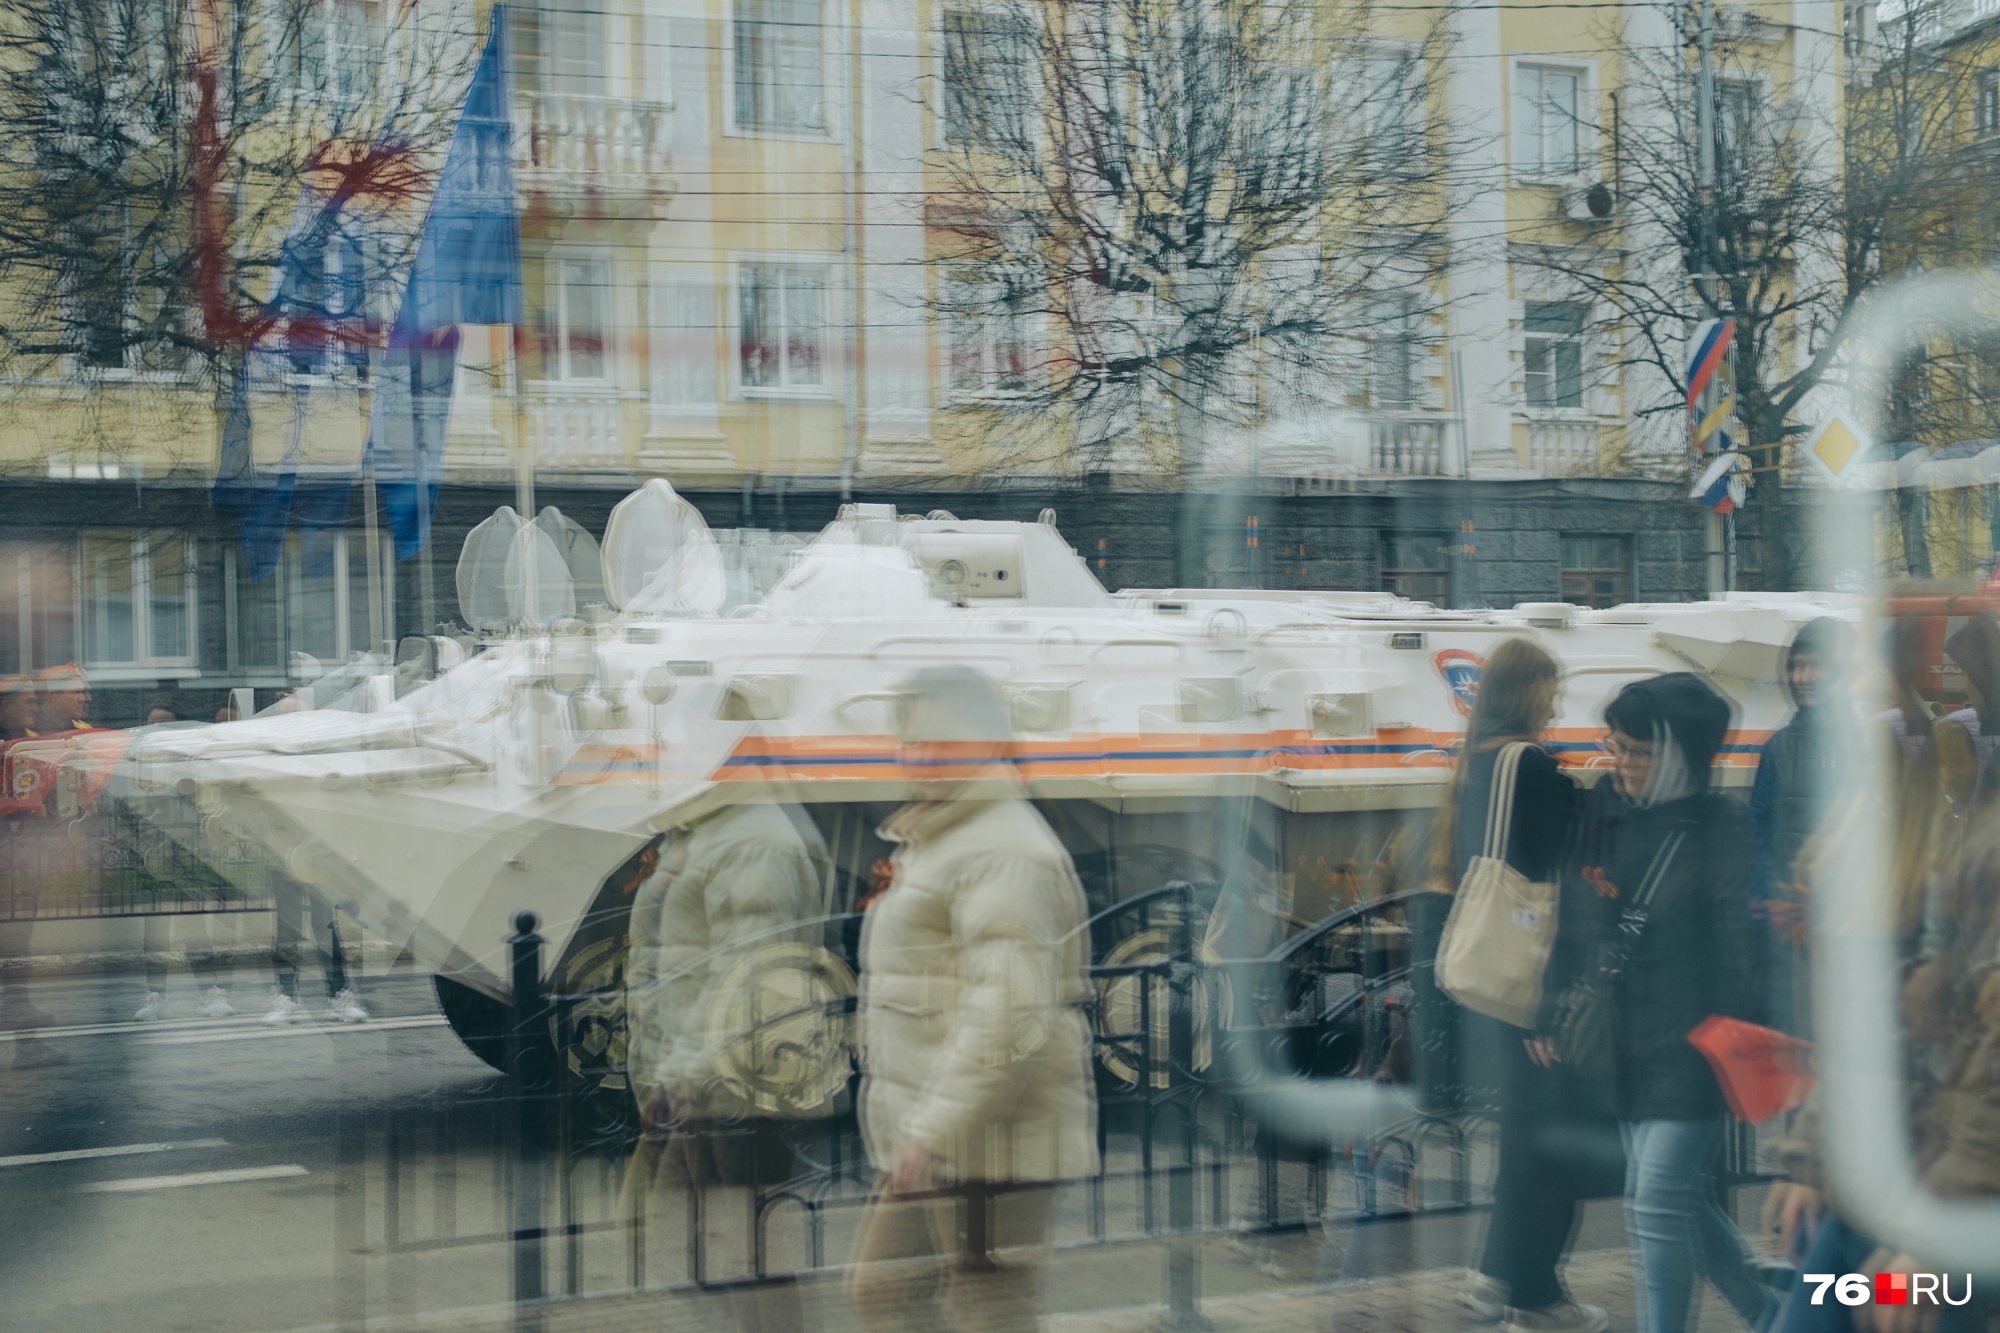 Военные машины впечатляют на улицах города